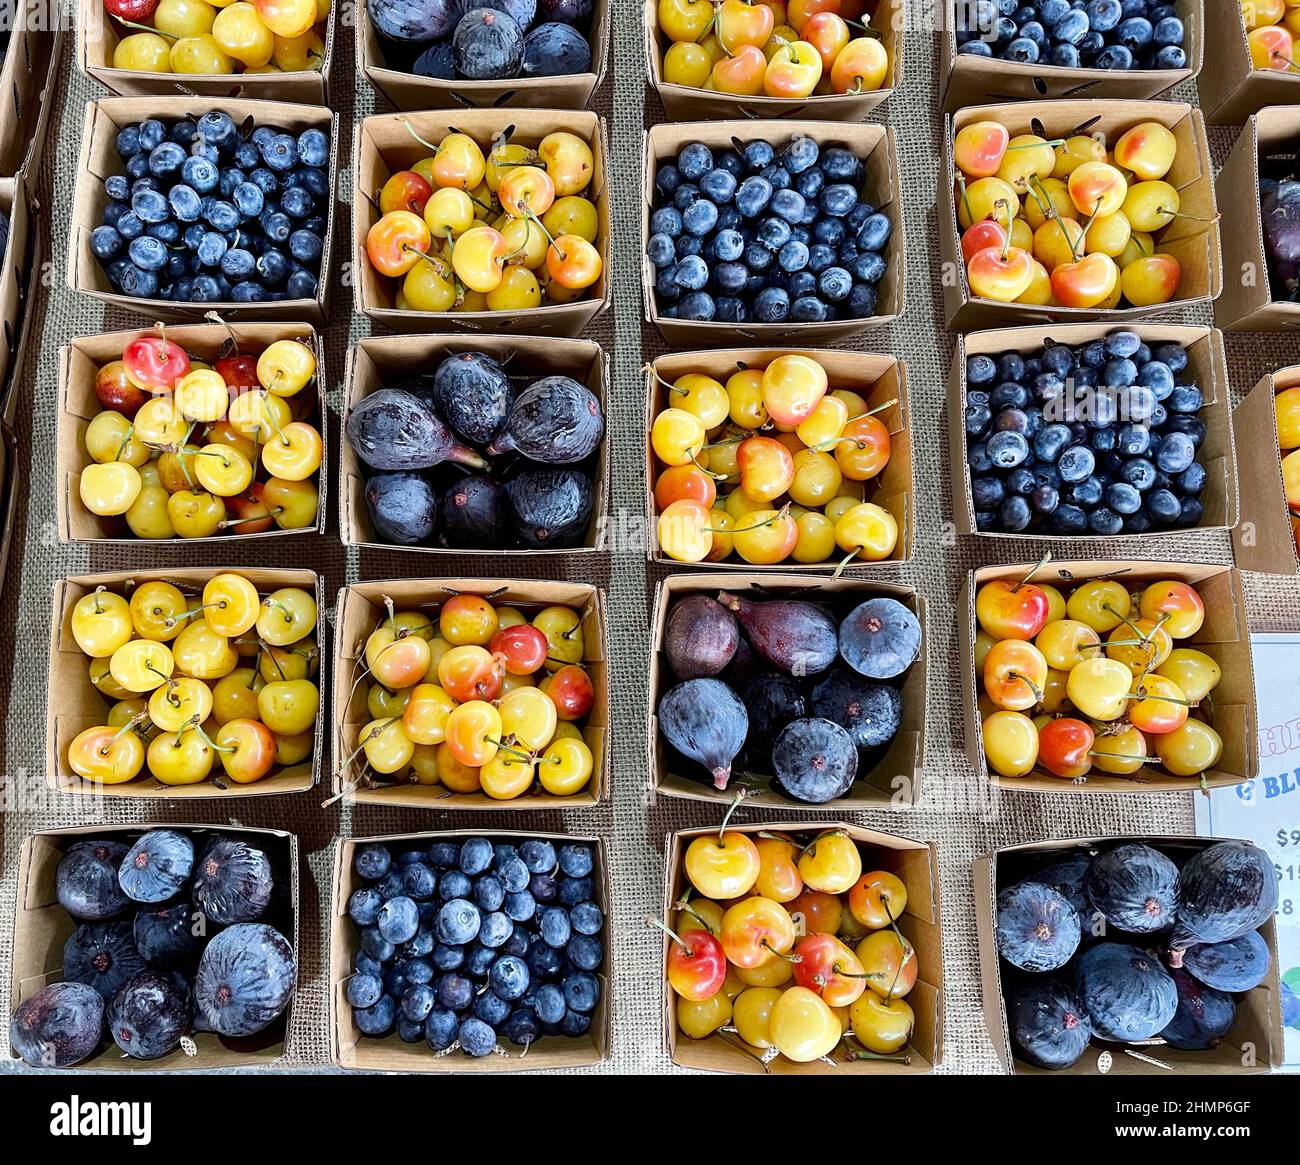 Farbenfrohe Anordnung von frischem Obst auf dem Bauernhof Stand Stockfoto